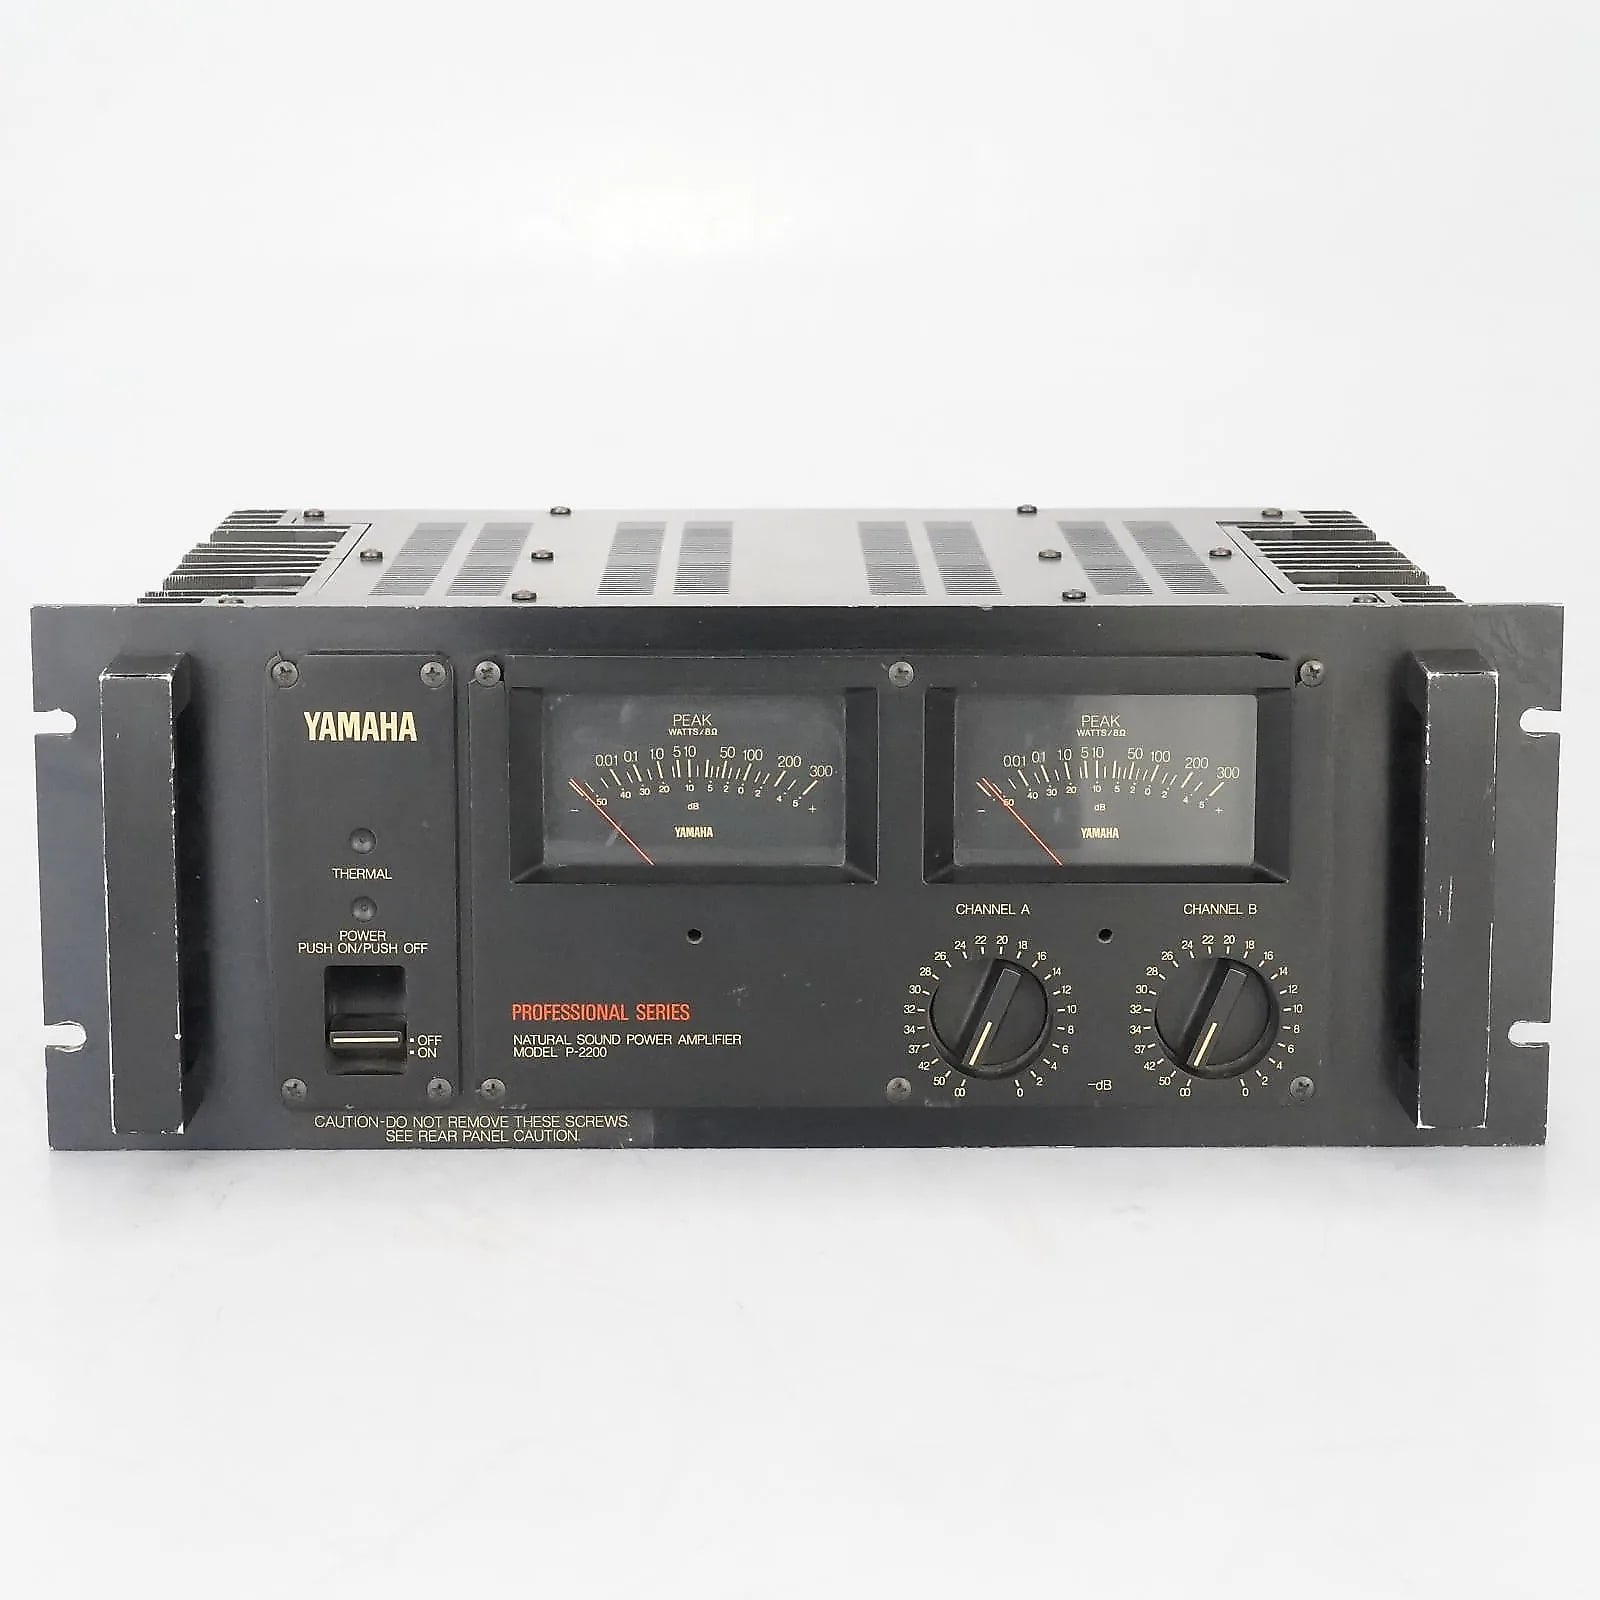 Amplificadores - Sonido profesional - Productos - Yamaha - España